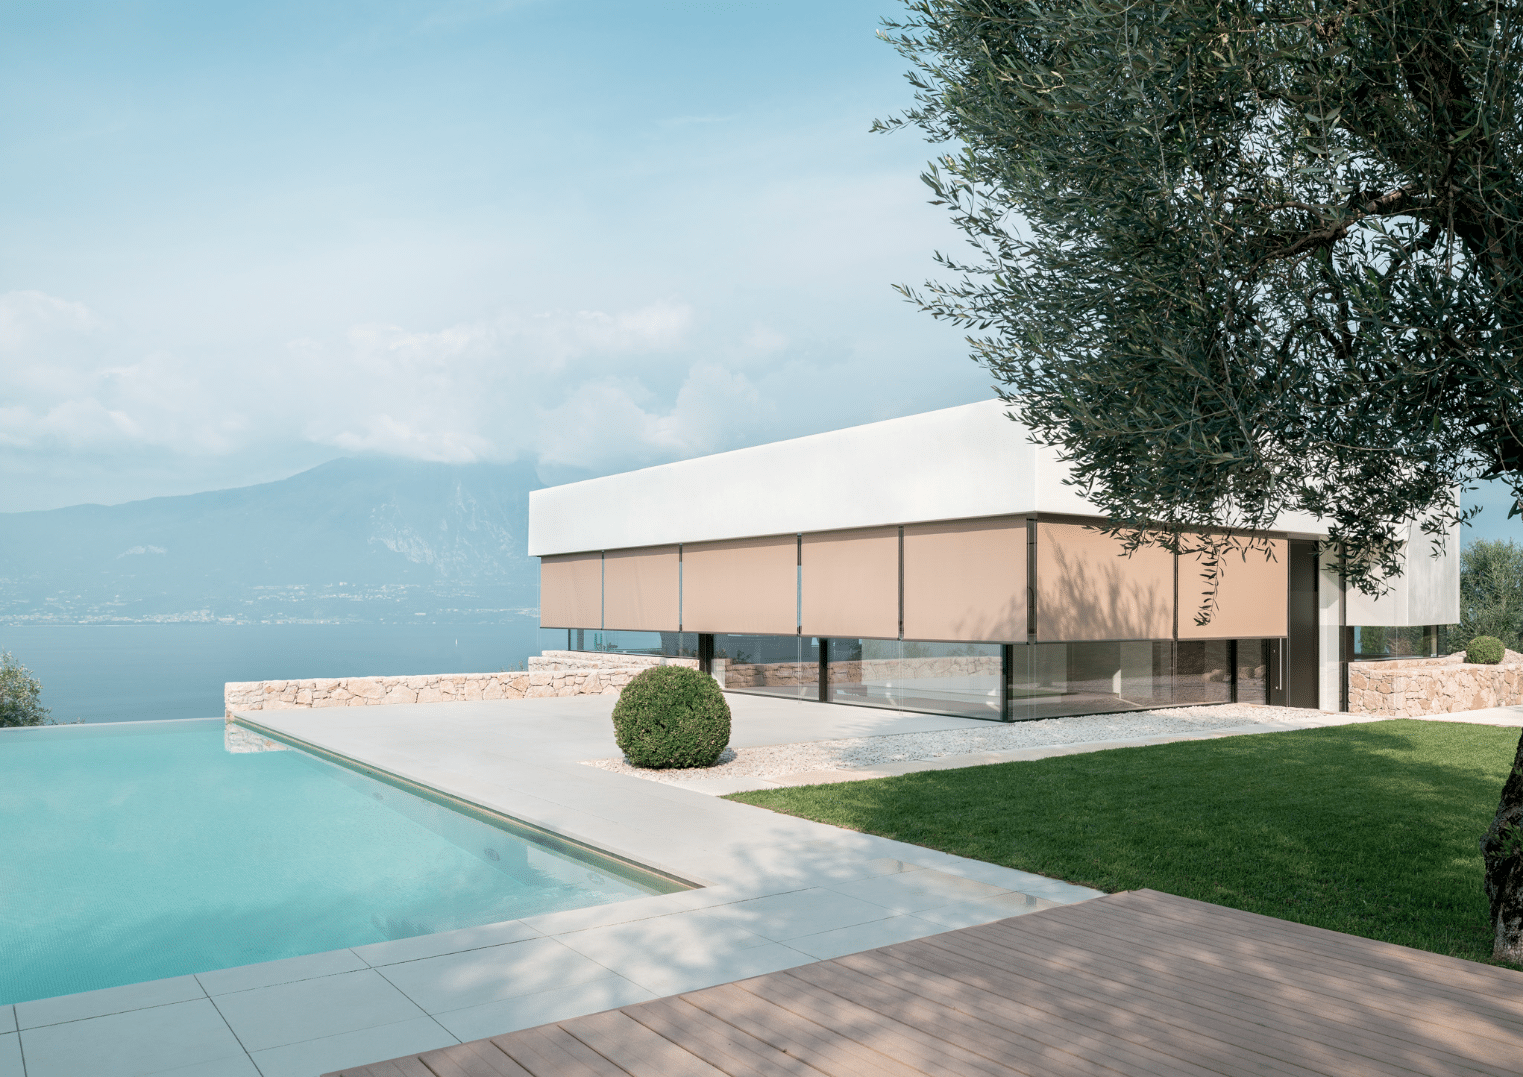 Hella präsentiert beige Senkrechtmarkisen eines Poolhauses mit großen Fensterflächen mit Terrasse davor und einer Grünfläche, gefliester Weg zum Pool, Aussicht auf See und in die Berge.